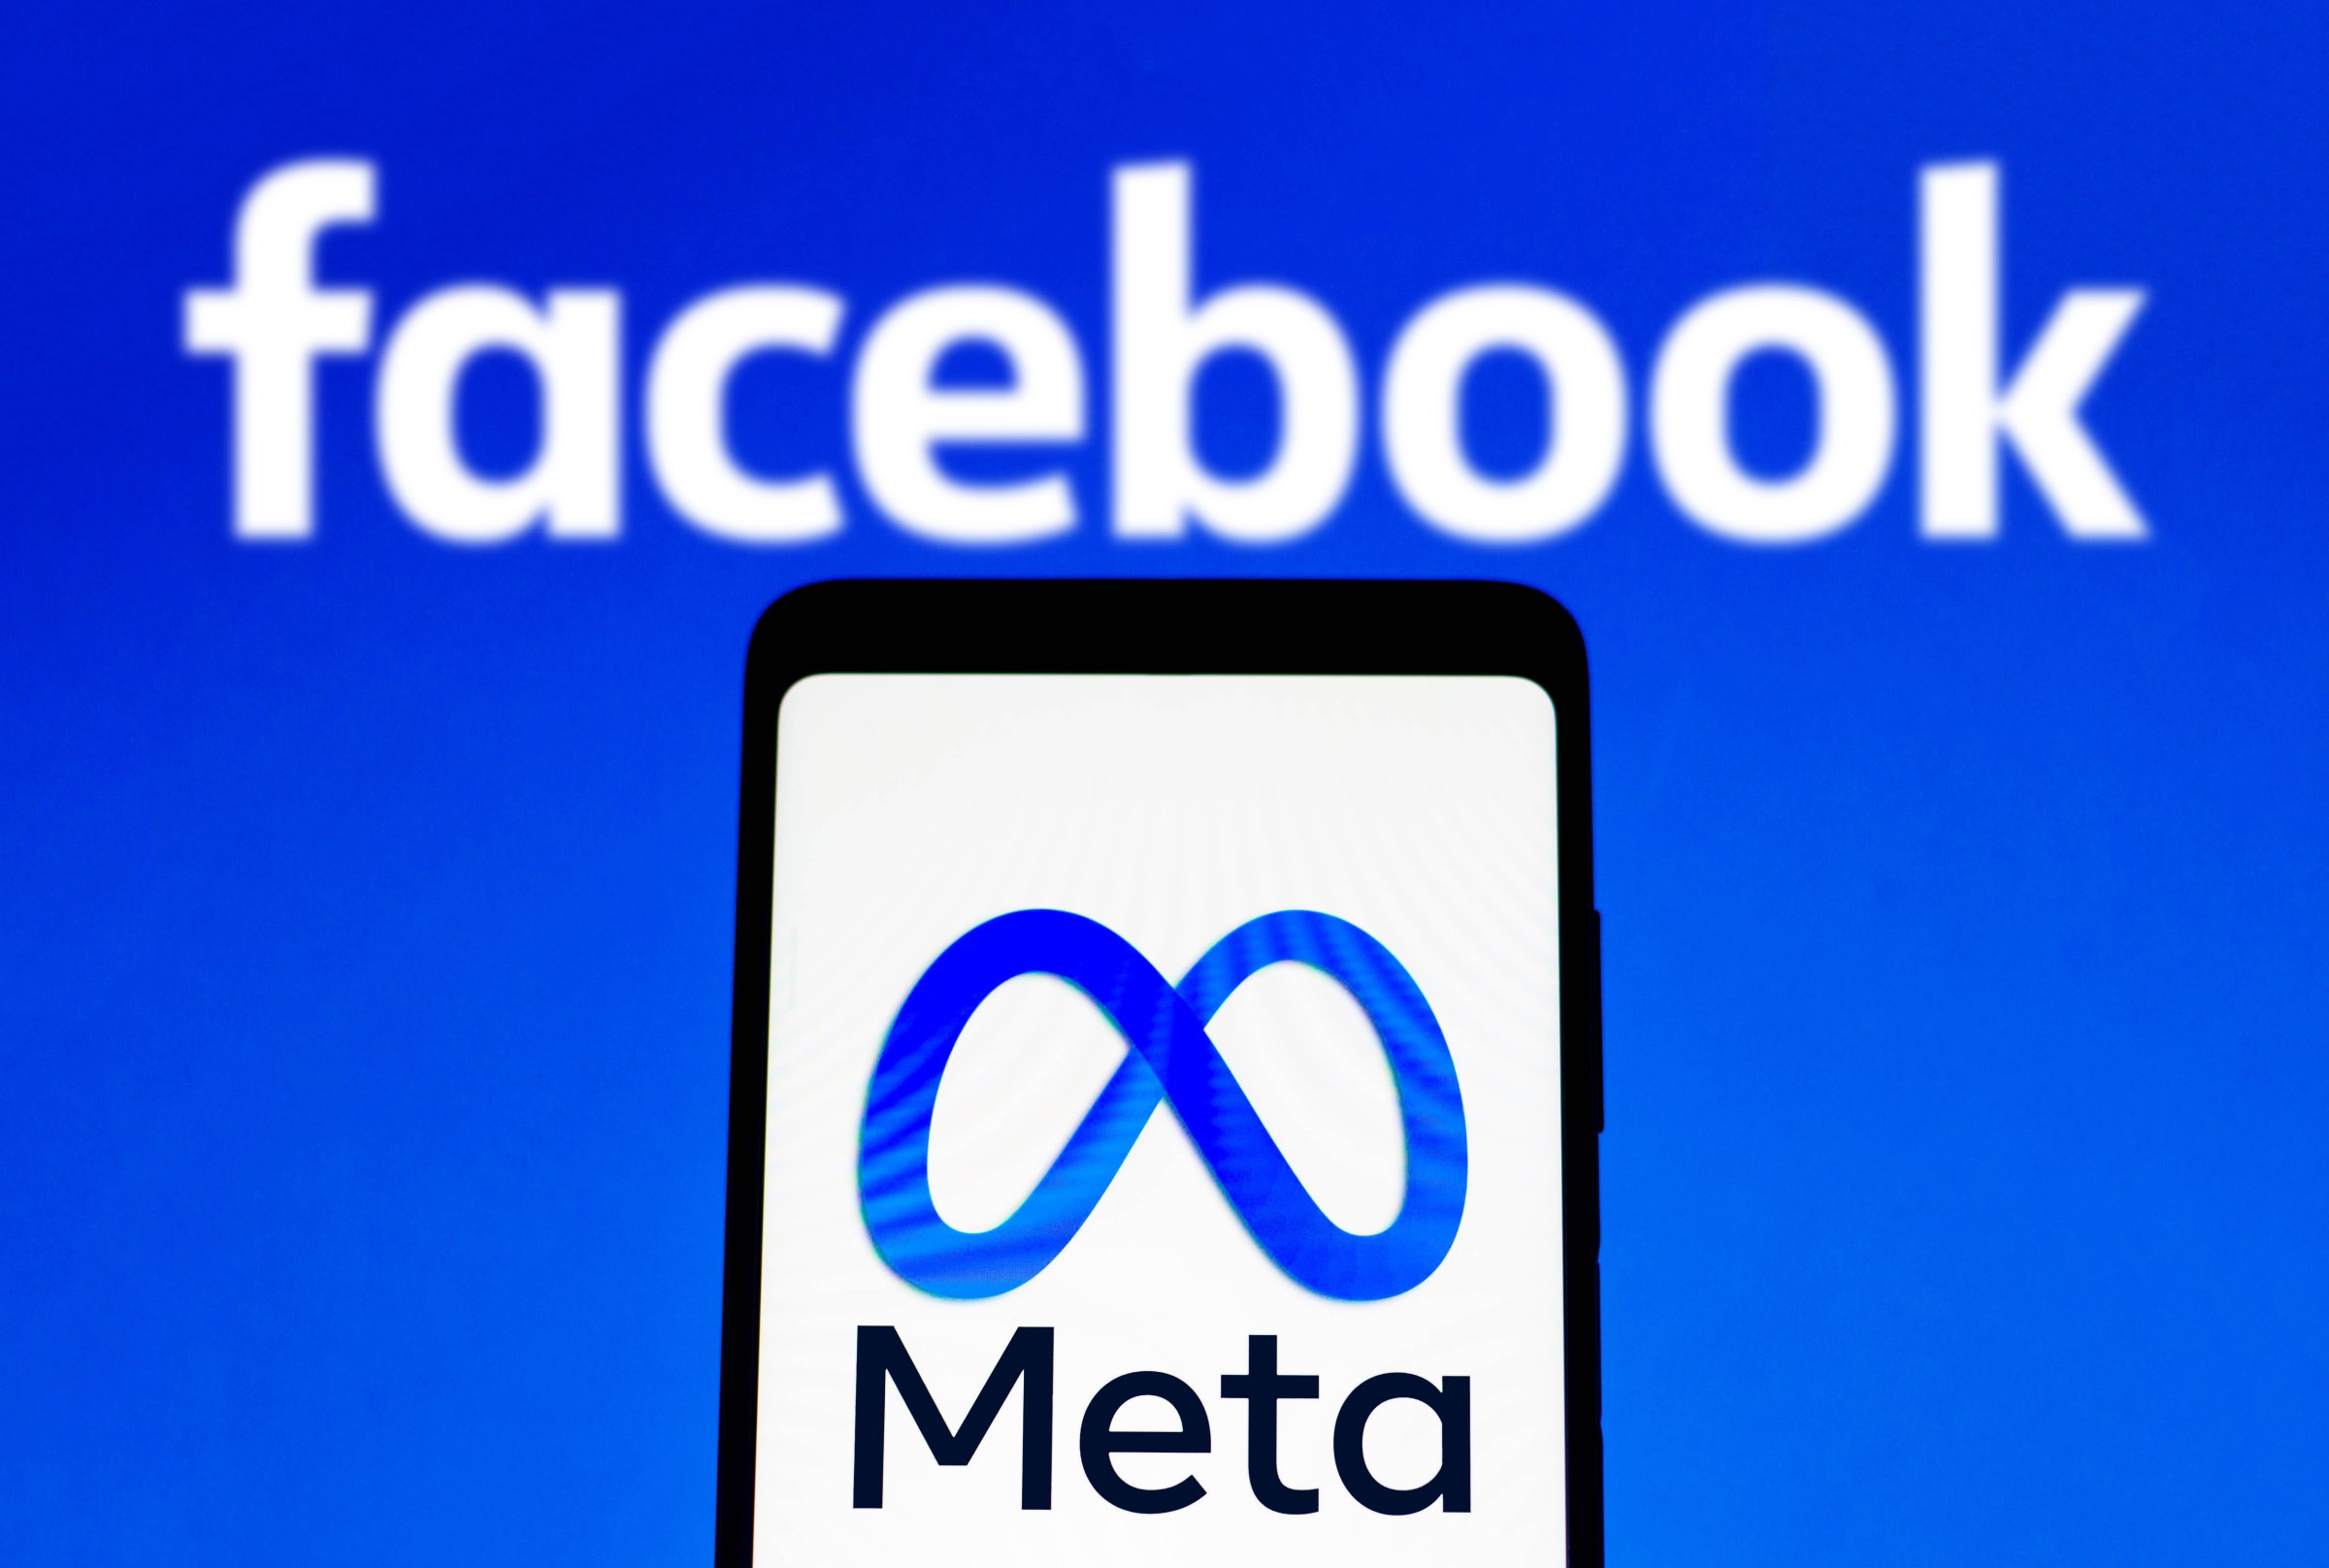 The Facebook logo and the Meta logo